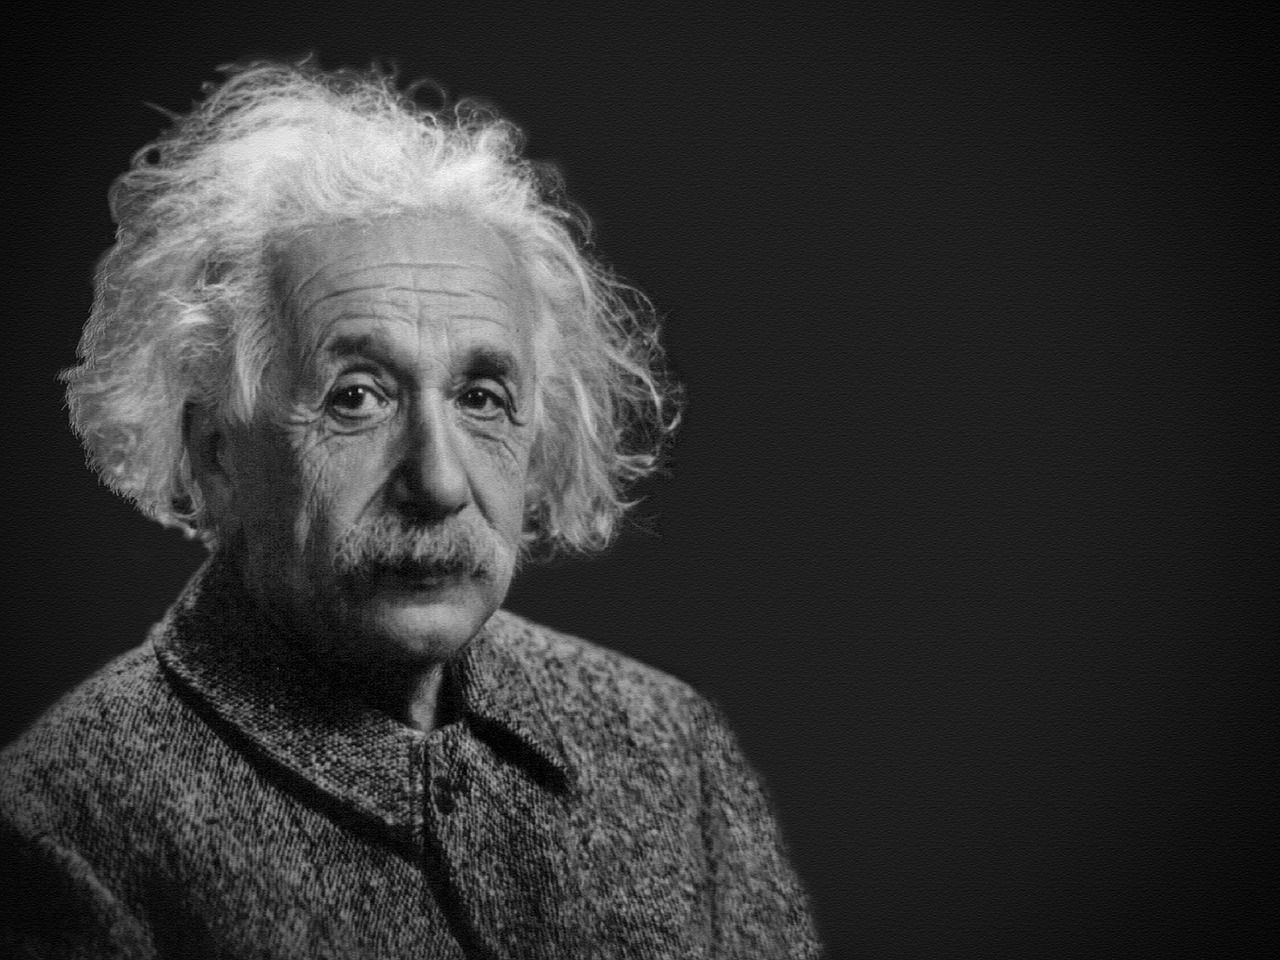 343 millió forintot fizettek egy kézzel írt Einstein-levélért